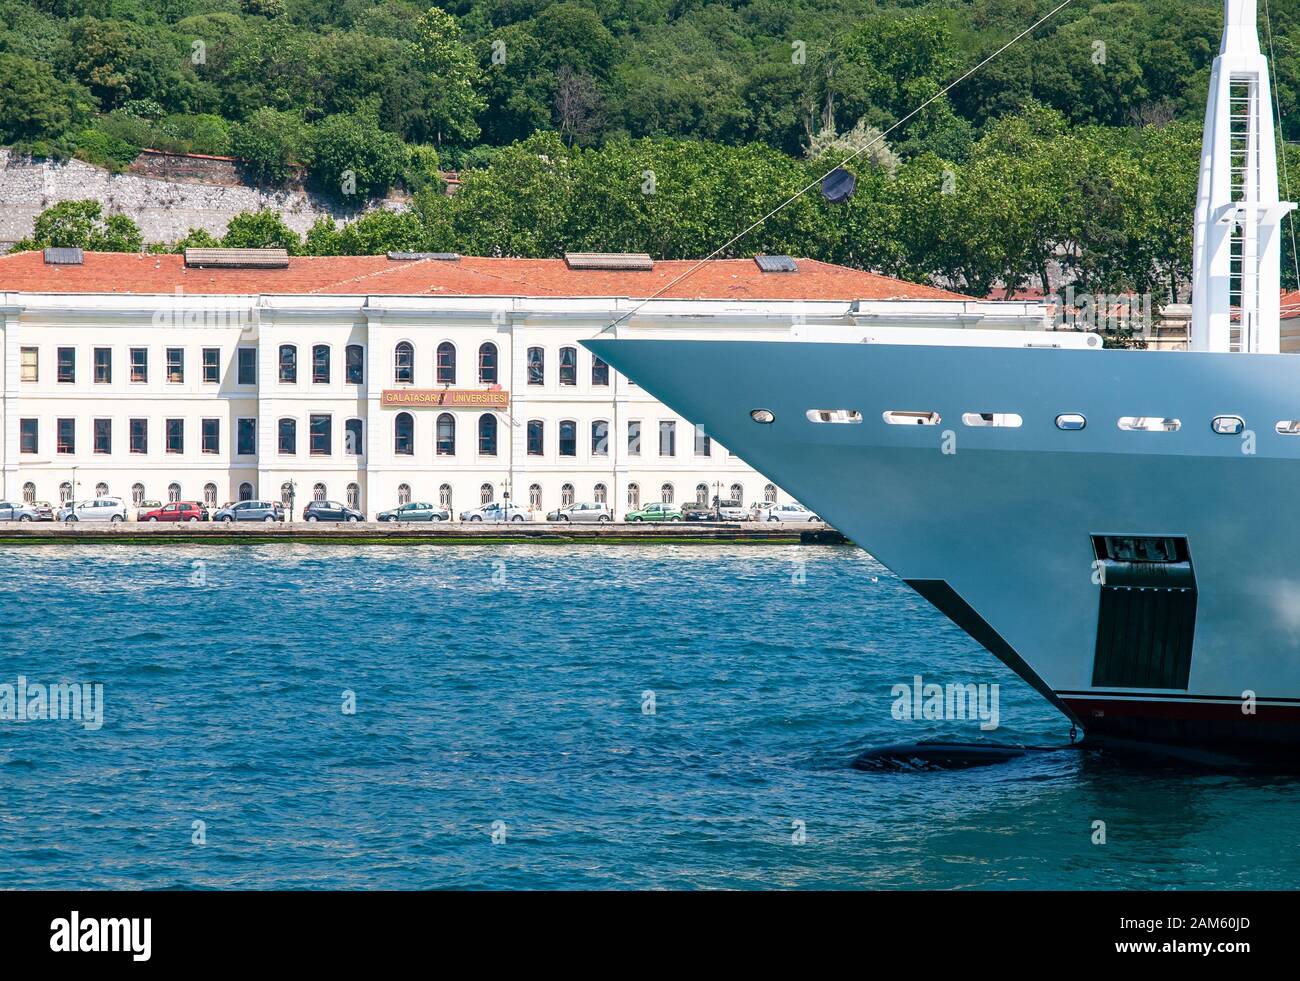 Galatasaray Universitesi, edificio universitario sulla costa dello stretto di Bosporus. Yacht passando. Foto scattata dalla nave da crociera. Foto Stock